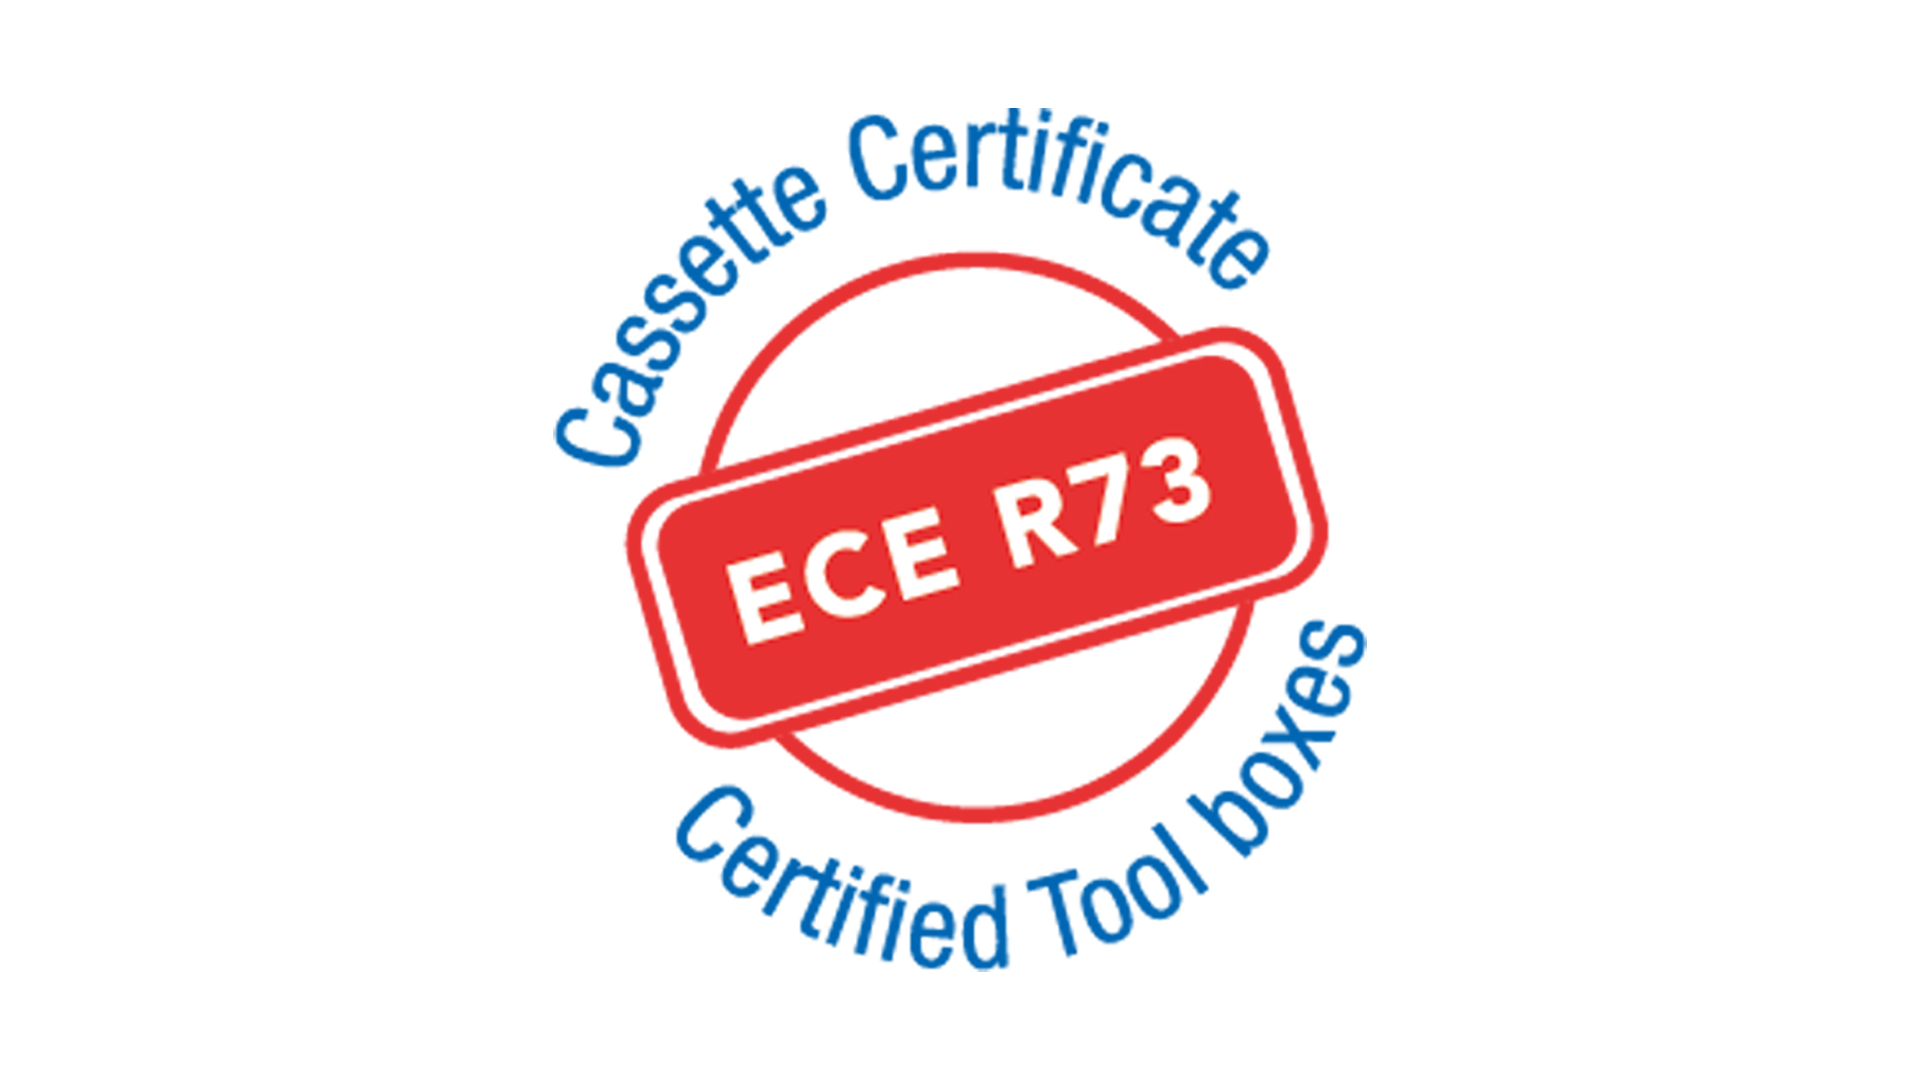 Wir haben die Zertifizierung ECE R73 erlangt